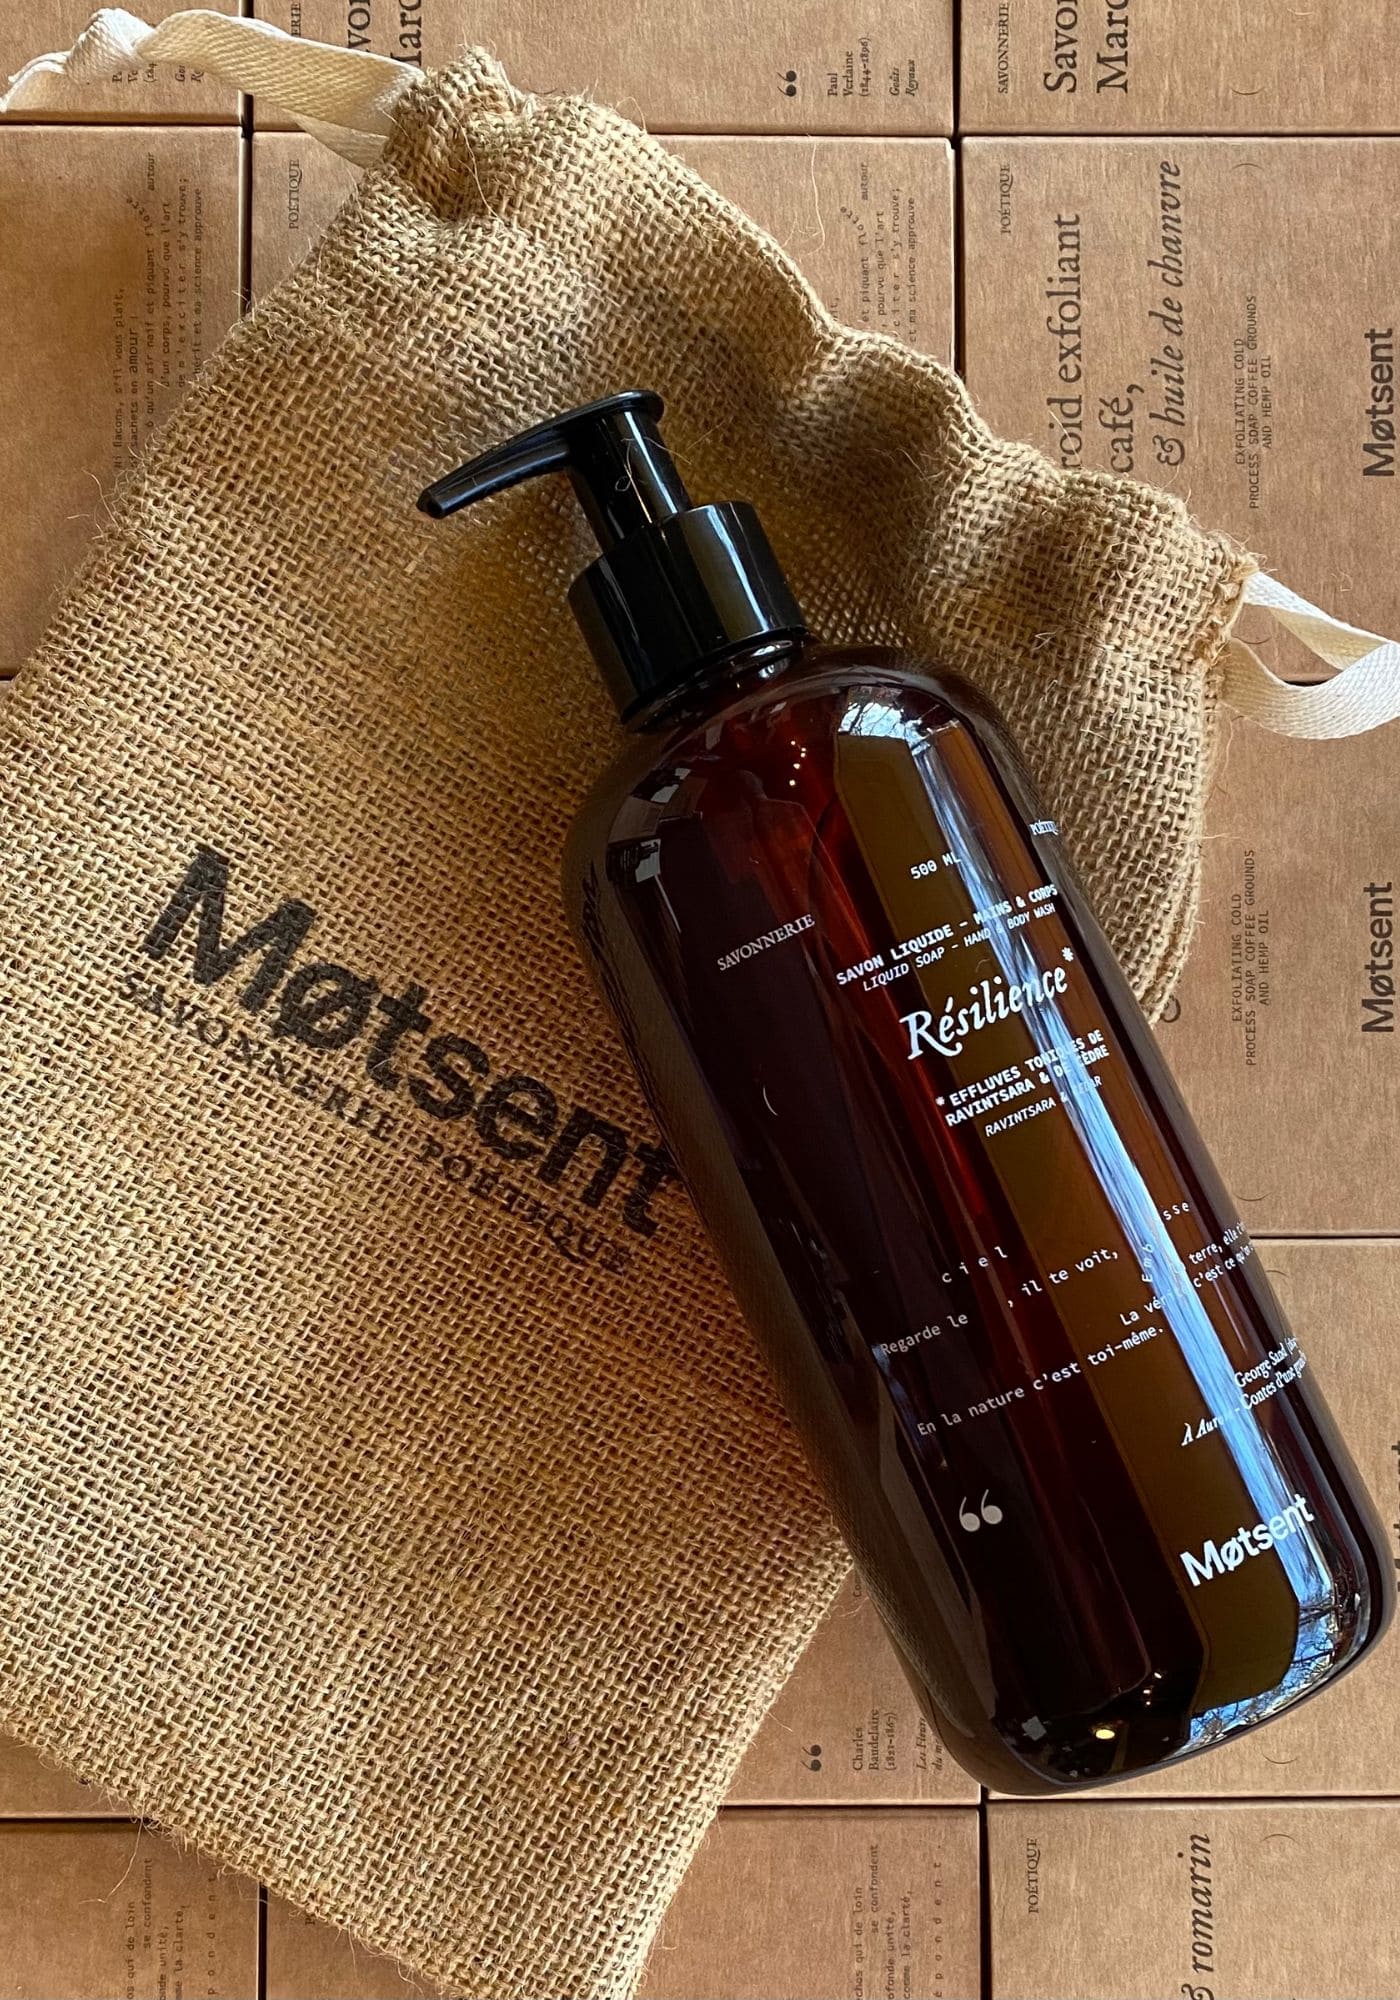 La bouteille de savon liquide Résilience est placée sur un sac en jute de chez Motsent